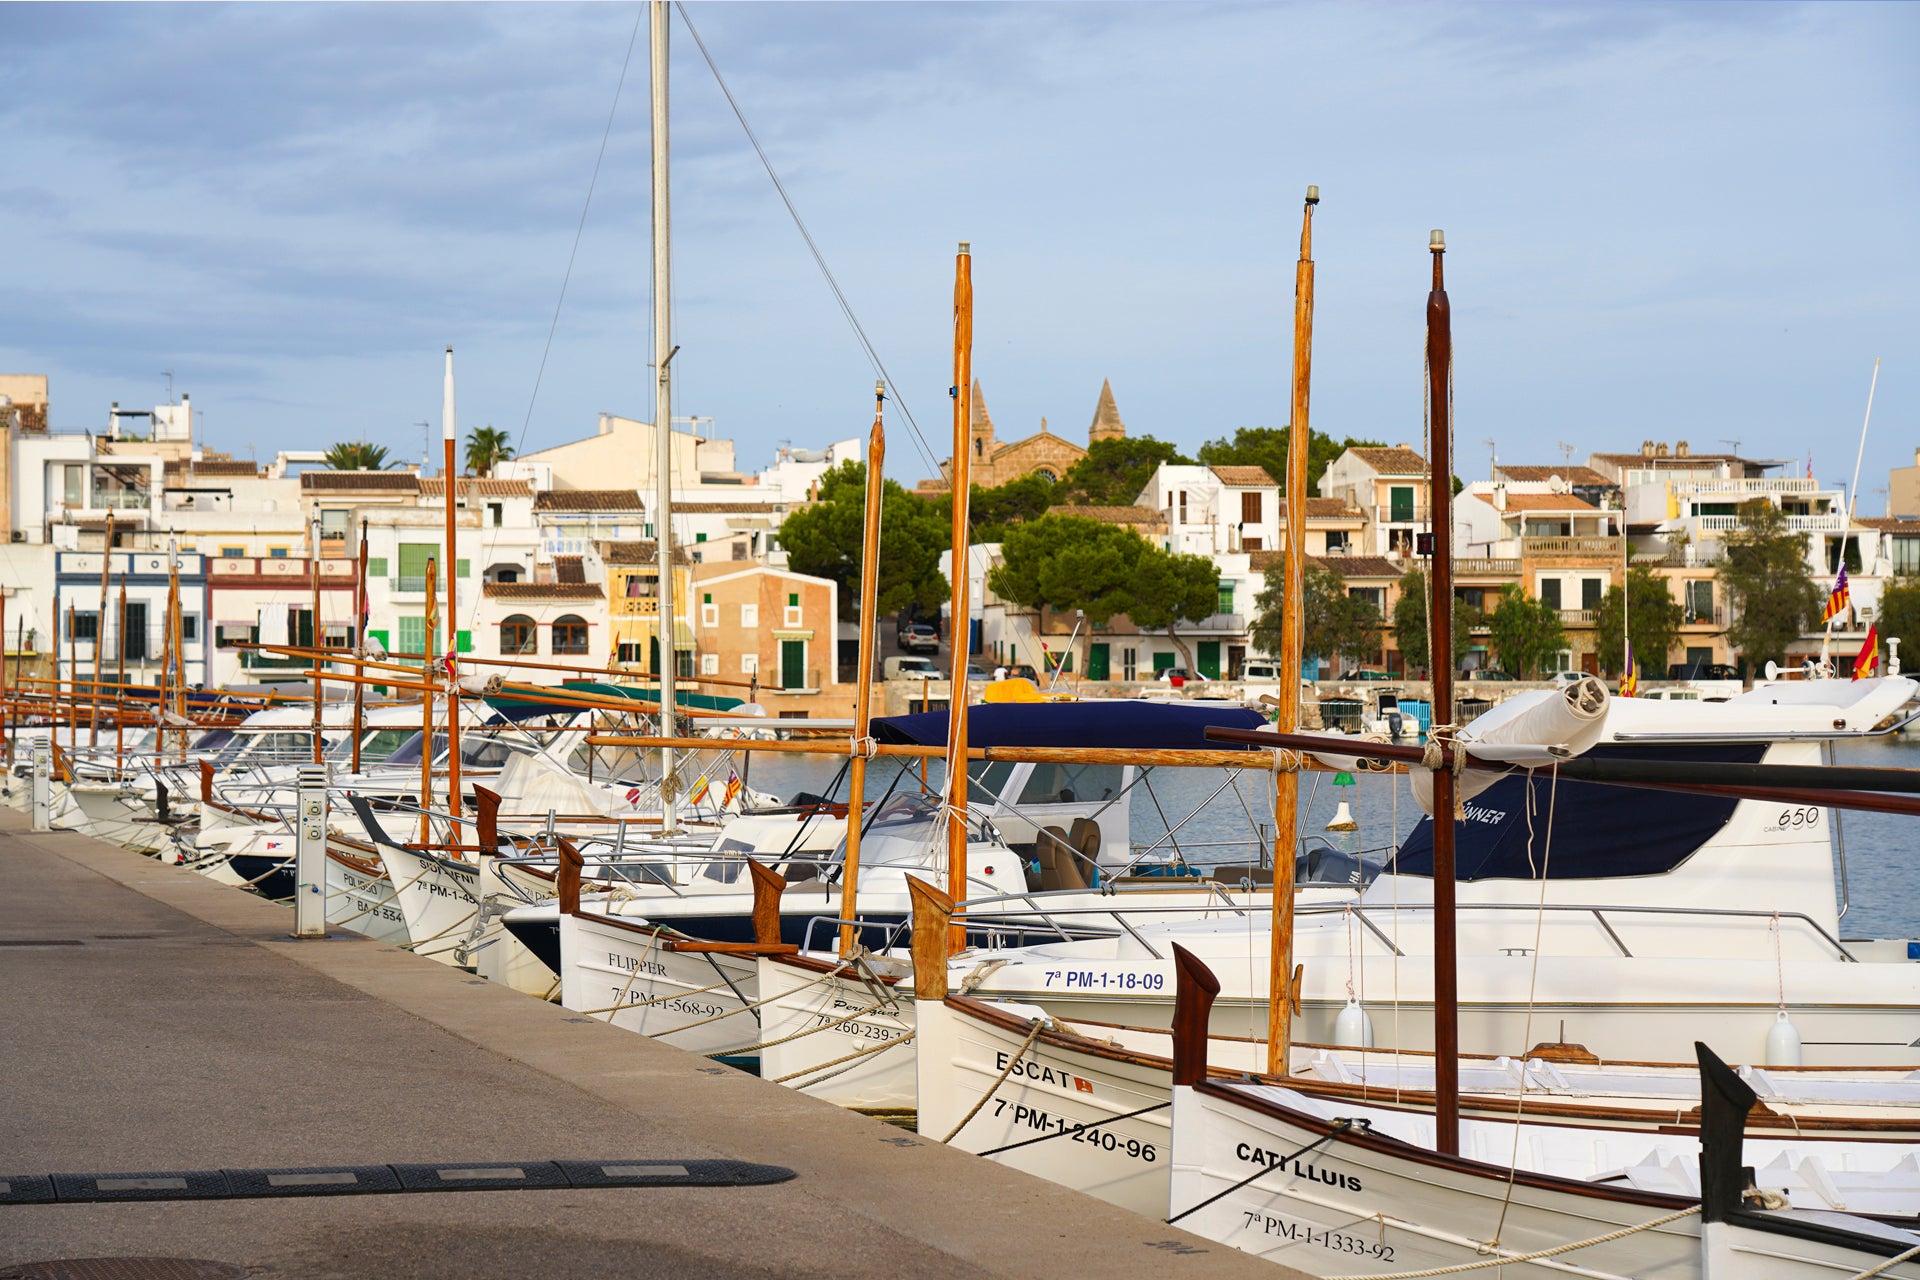 Bateaux et yachts dans un port typique en Espagne